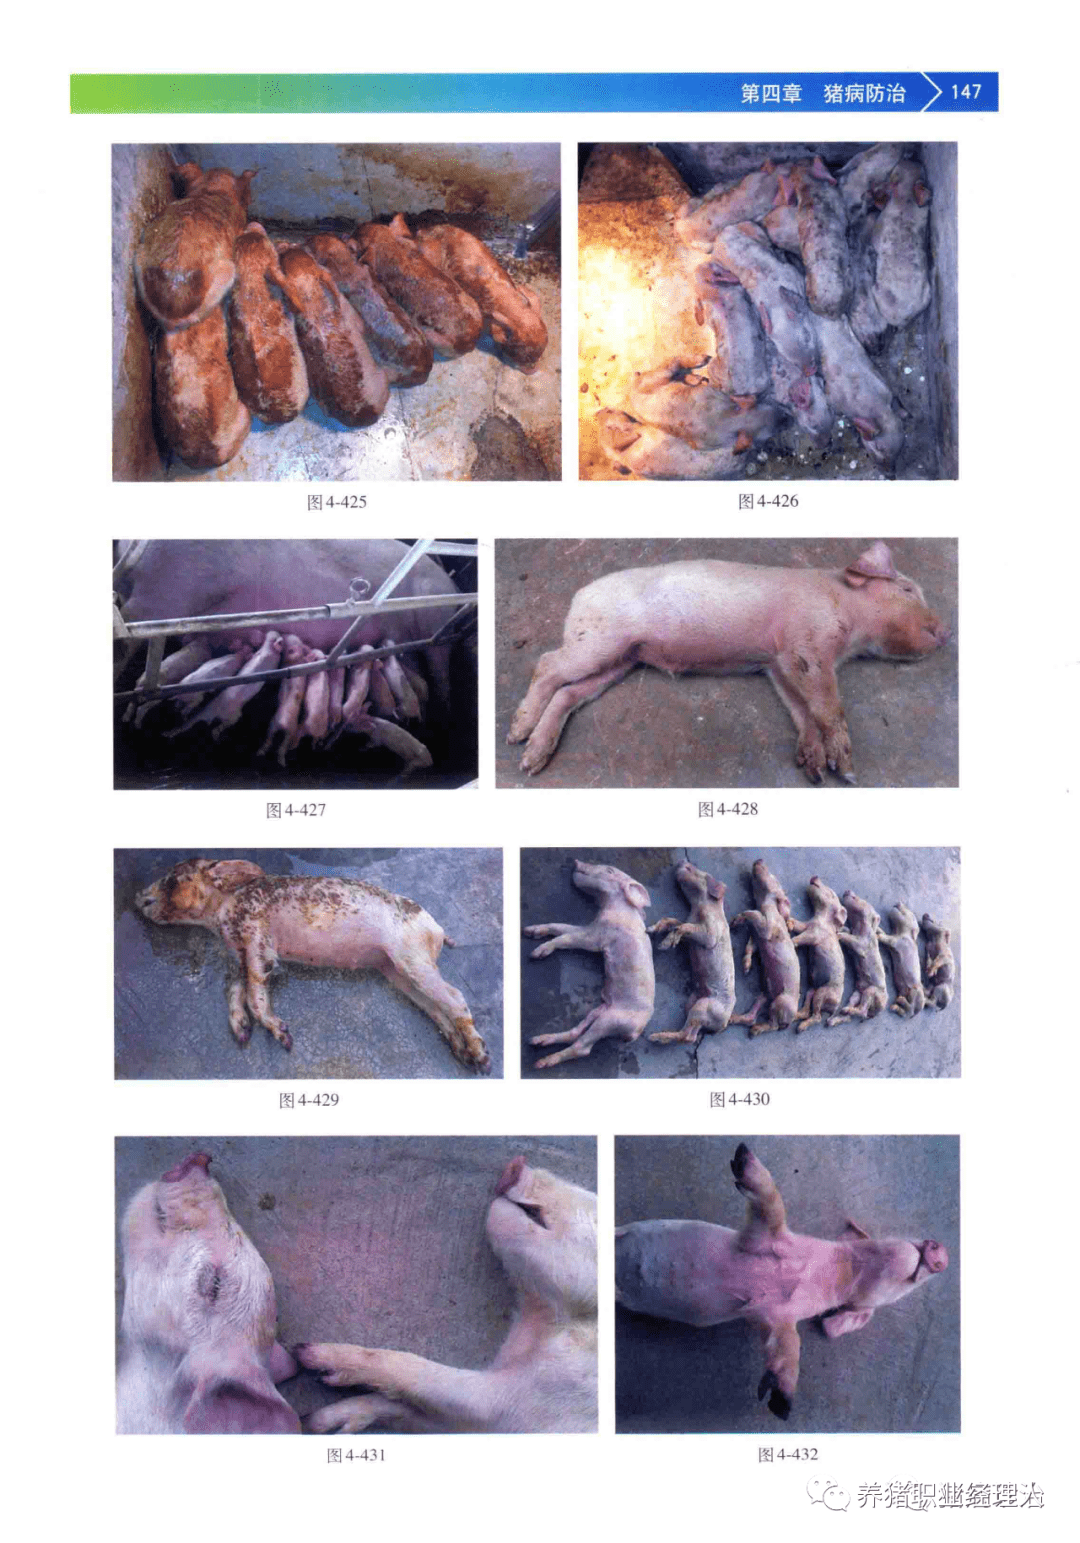 猪流行性腹泻的诊断与防治